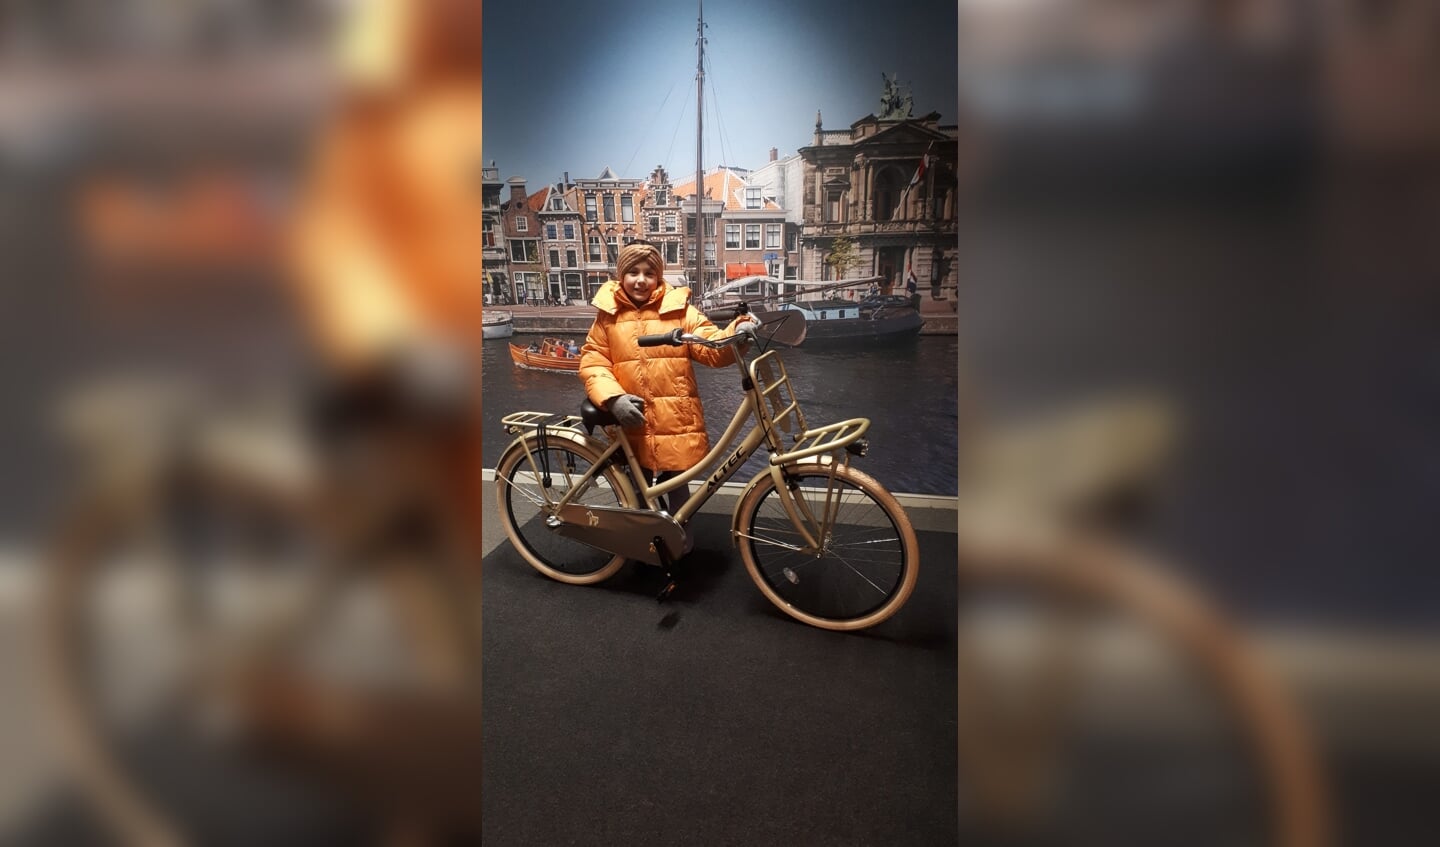 De negenjarige Fallon uit Haarlem is ontzettend blij met haar nieuwe fiets.